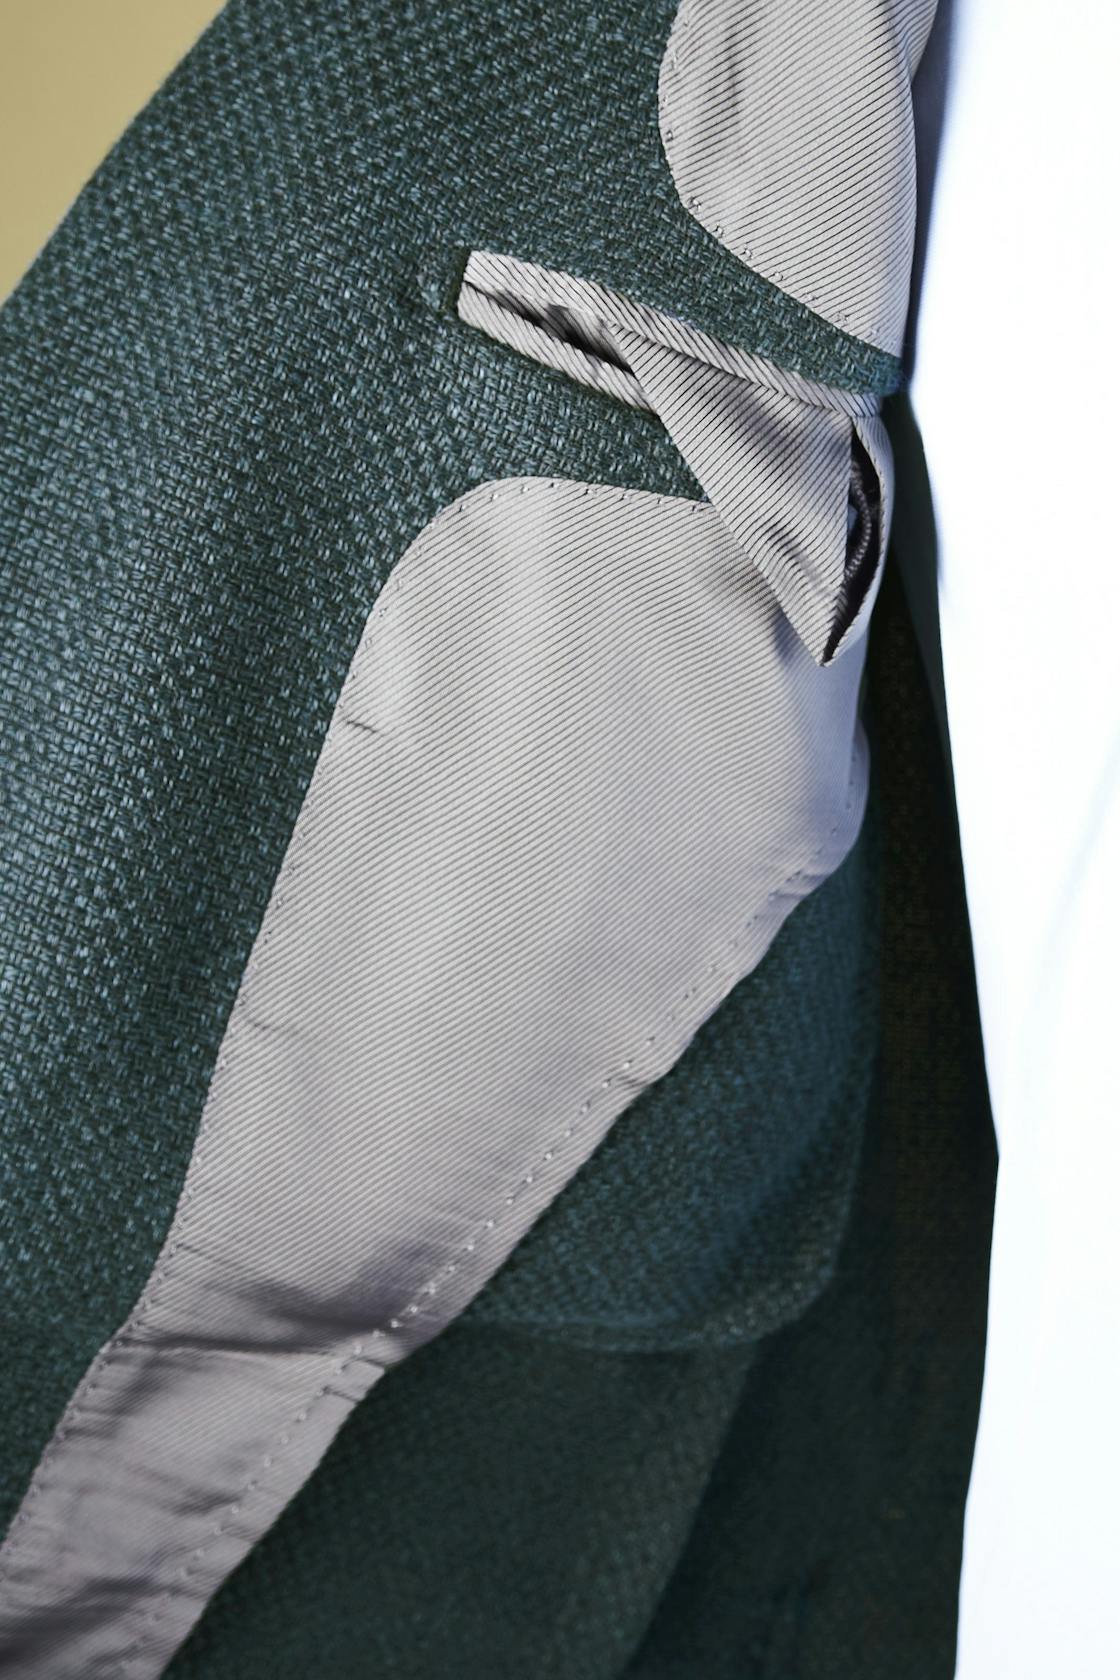 Ring Jacket Meister 254HF Grey Green Linen/Wool/Silk Weave Sport Coat